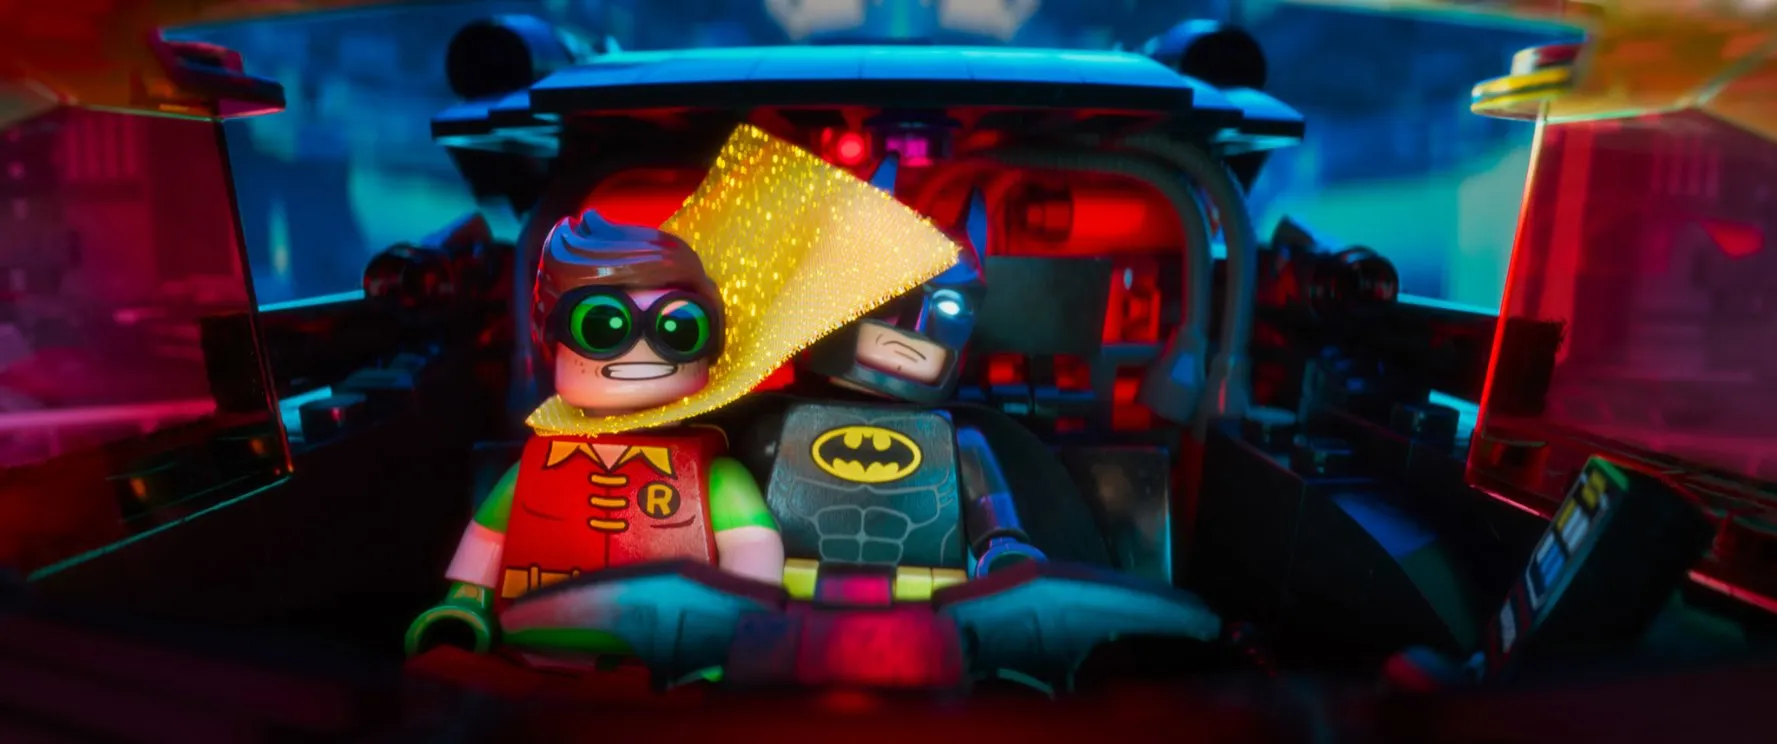 Nhận xét về phim The Lego Batman Movie: hài hước, gay cấn, hình ảnh đẹp